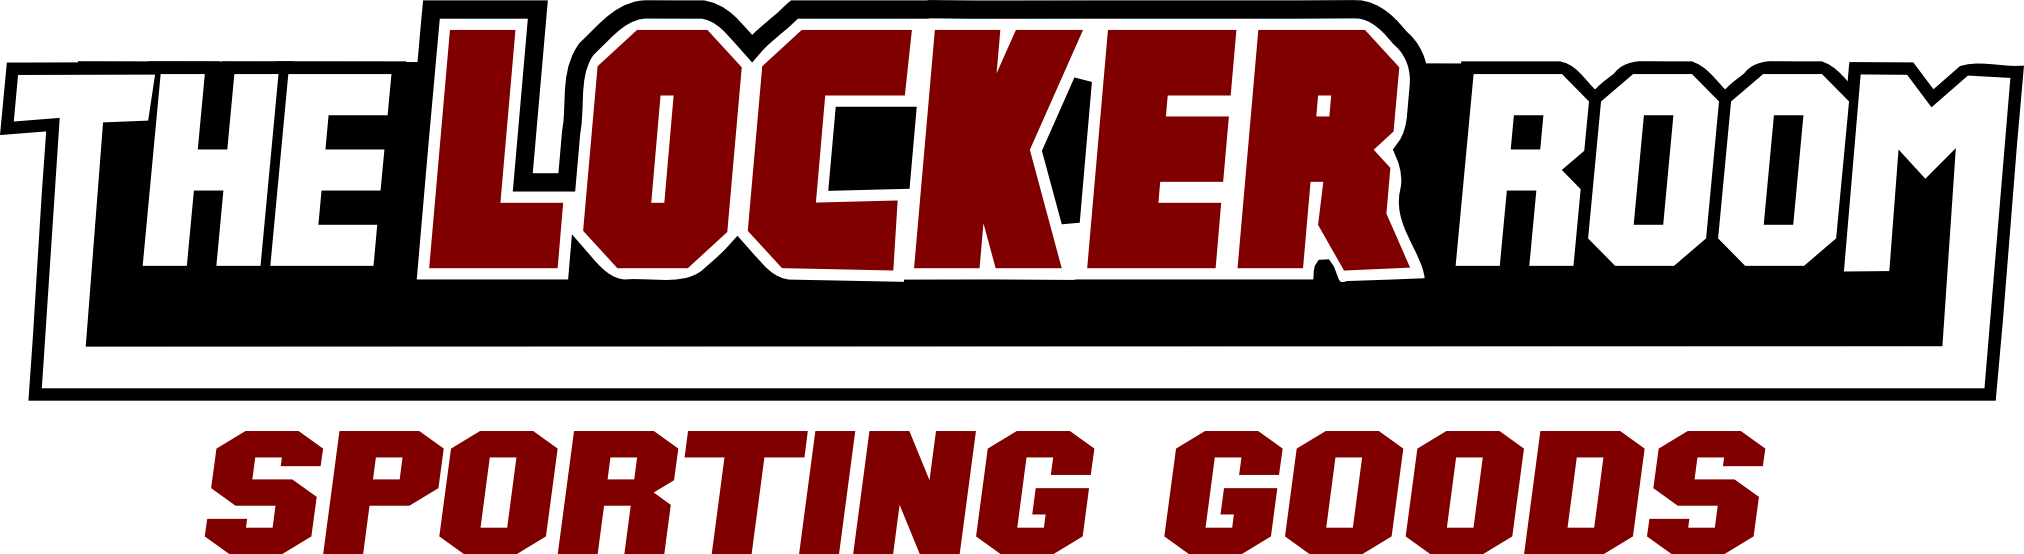 Sporting Goods Logo - Locker Room